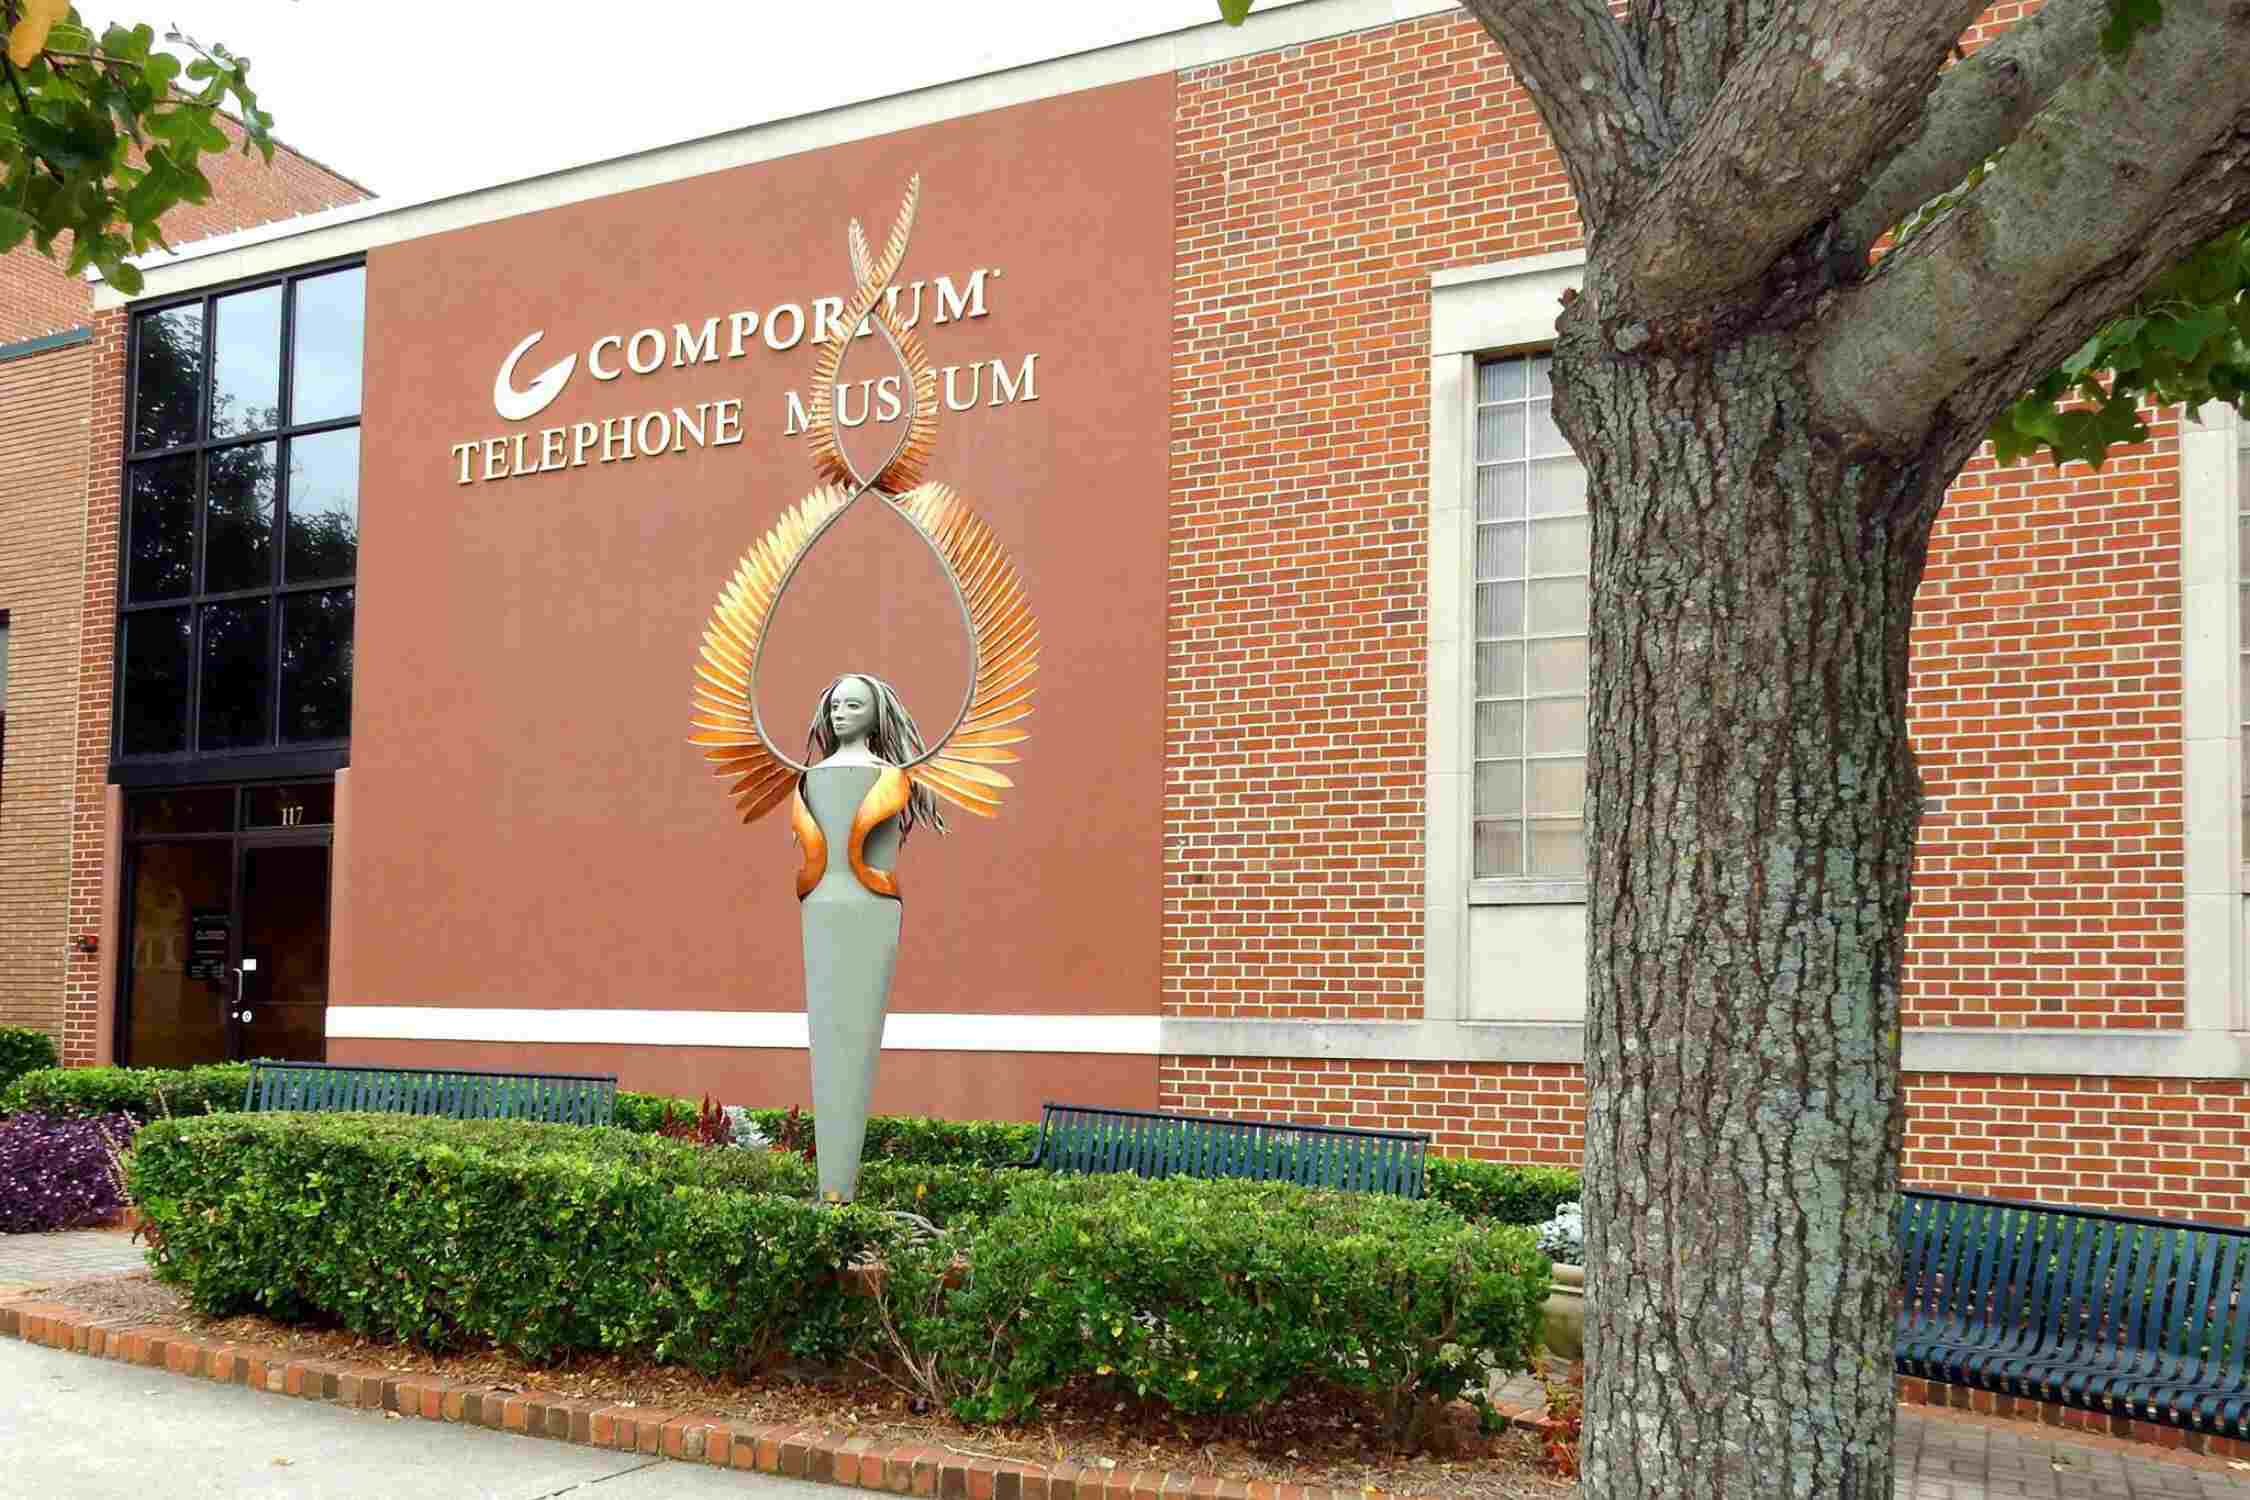 Comporium Telephone Museum